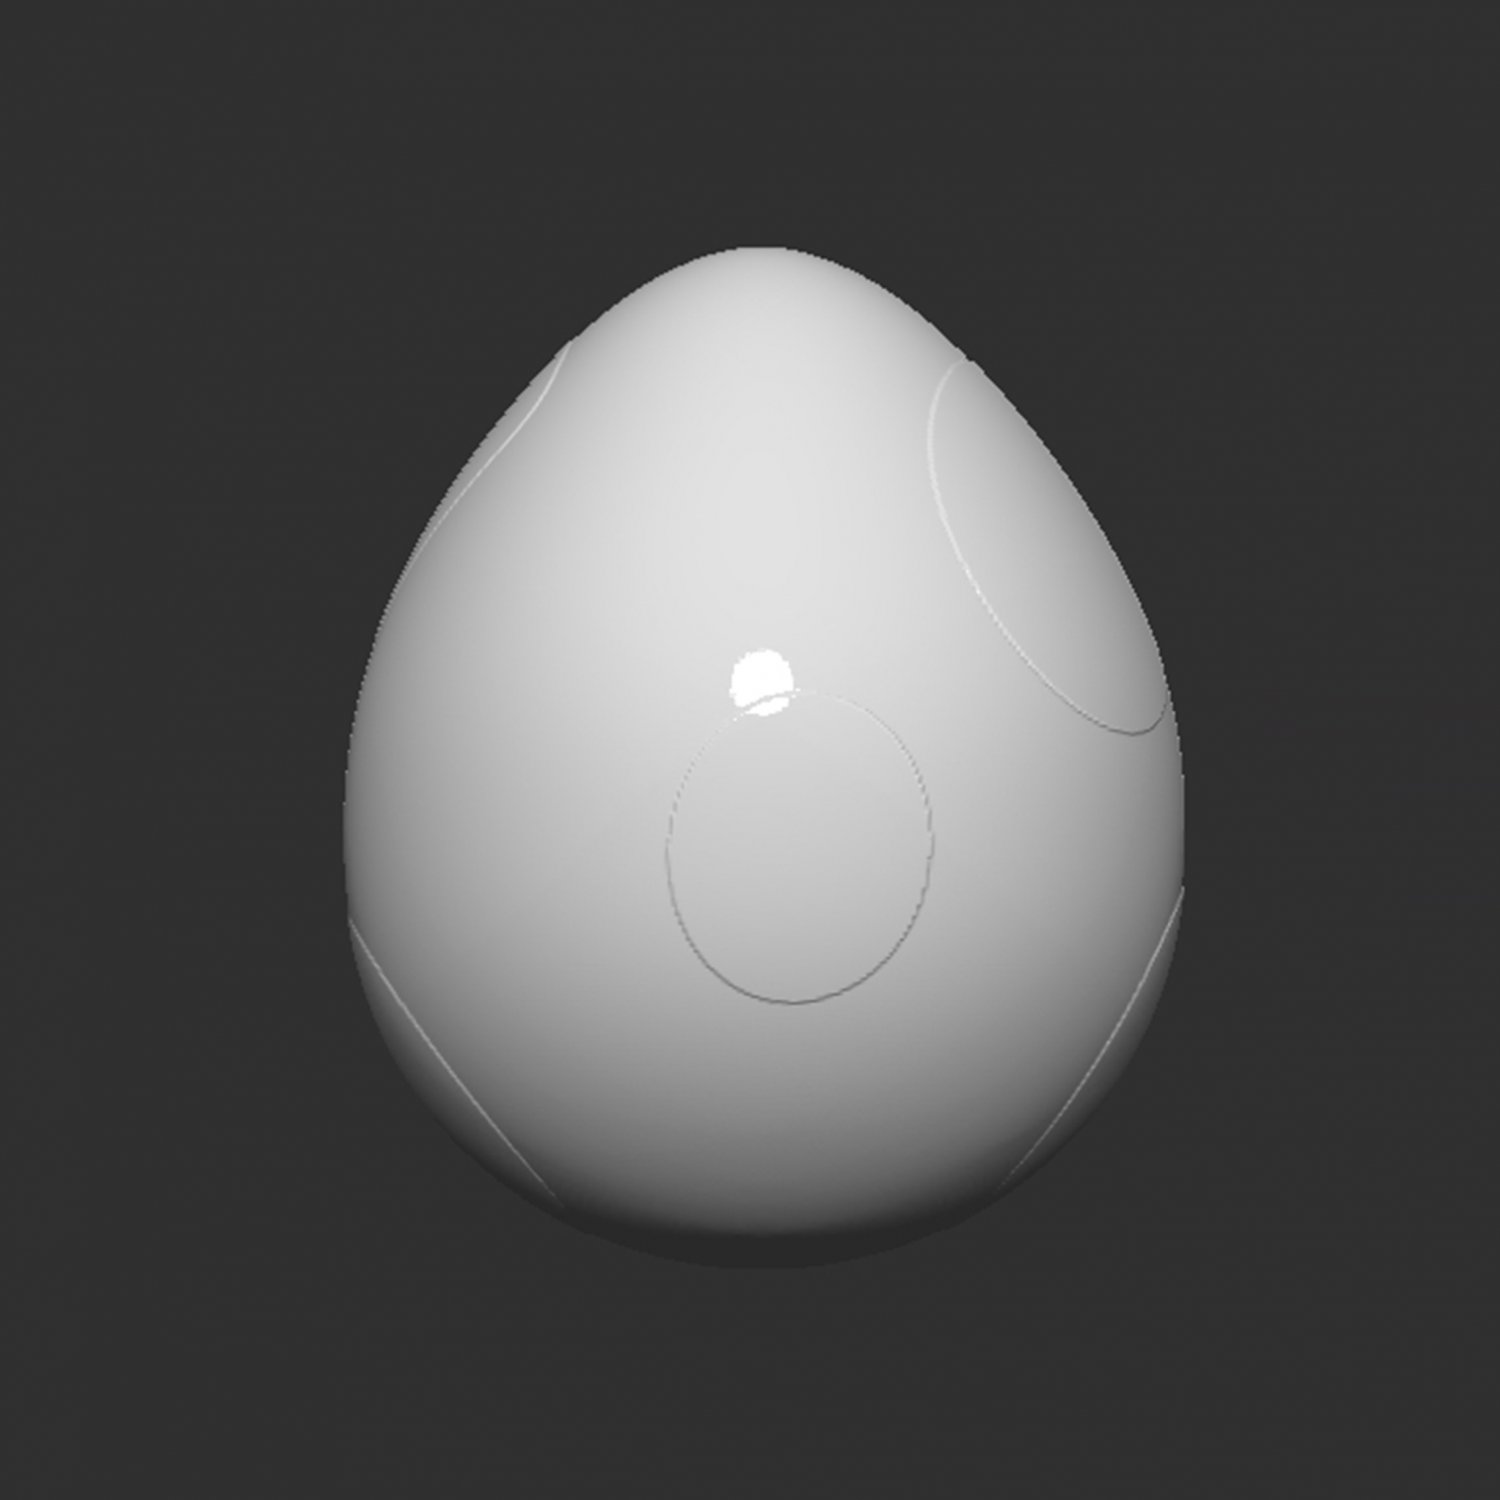 Yoshi egg - Roblox